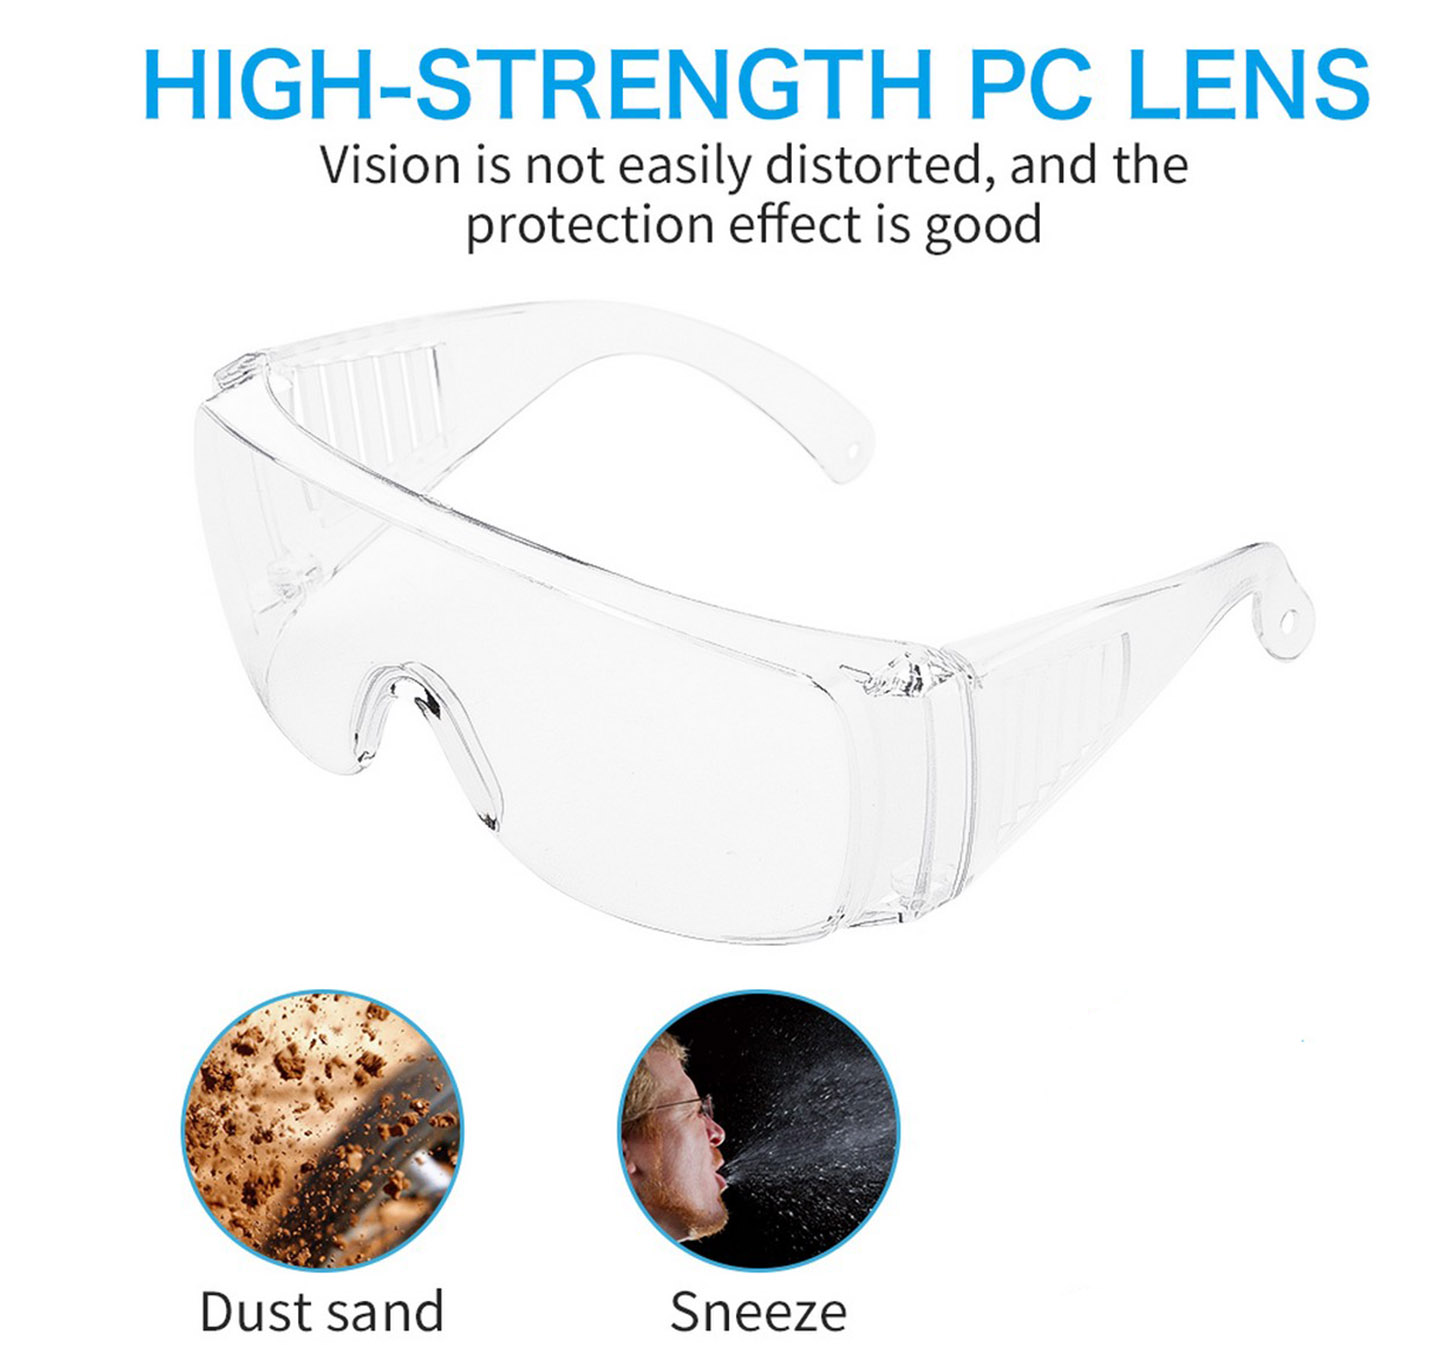 ögonskydd mot virus - glasögon